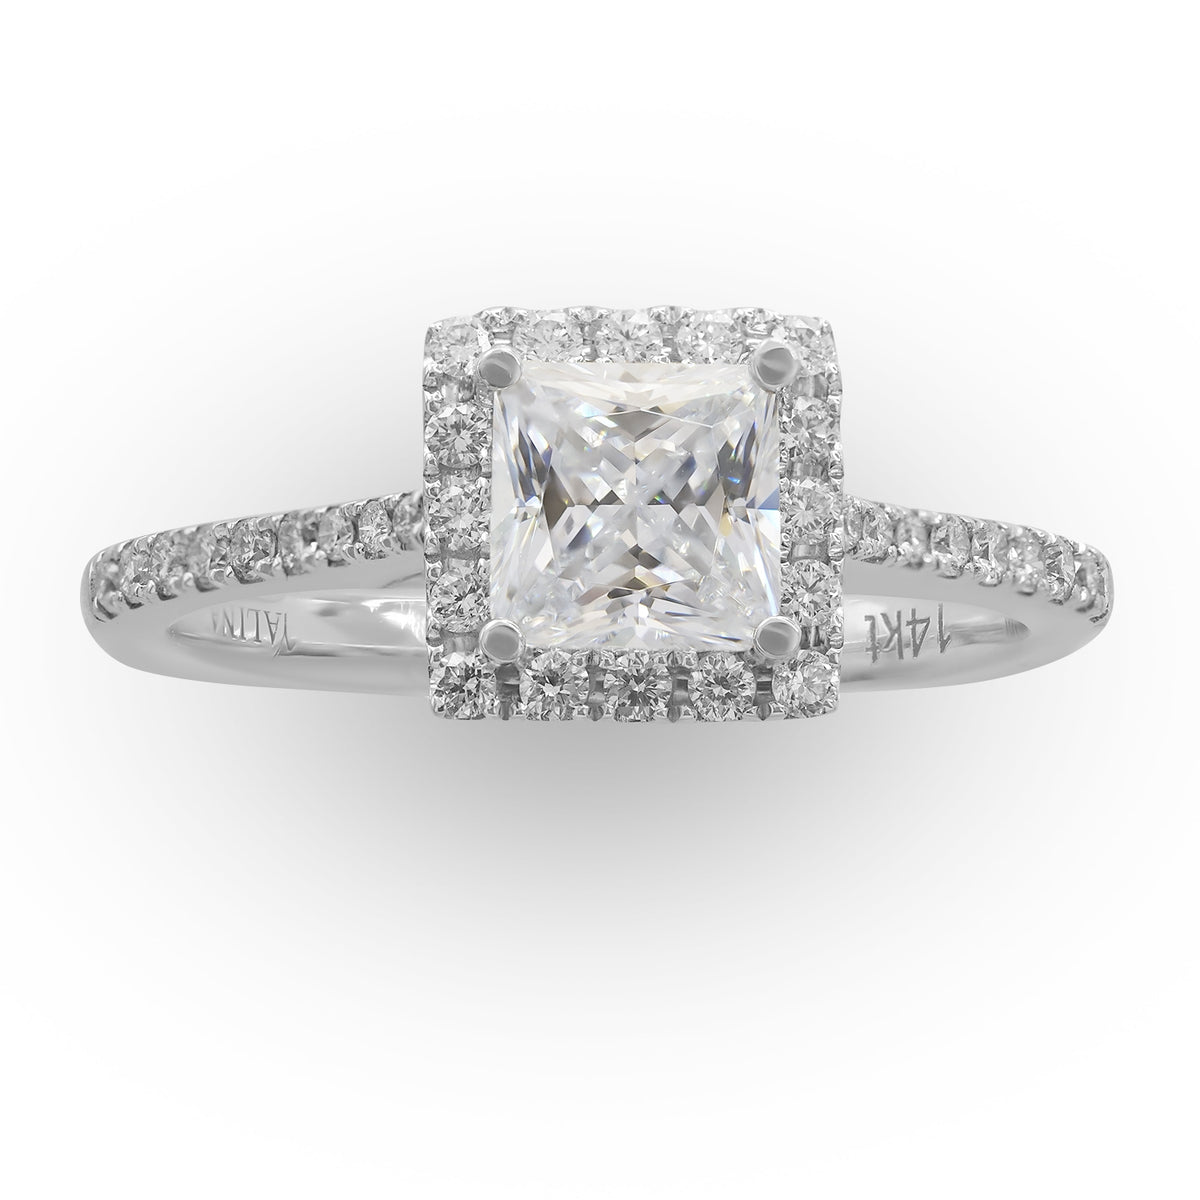 Princess Halo Diamond Ring